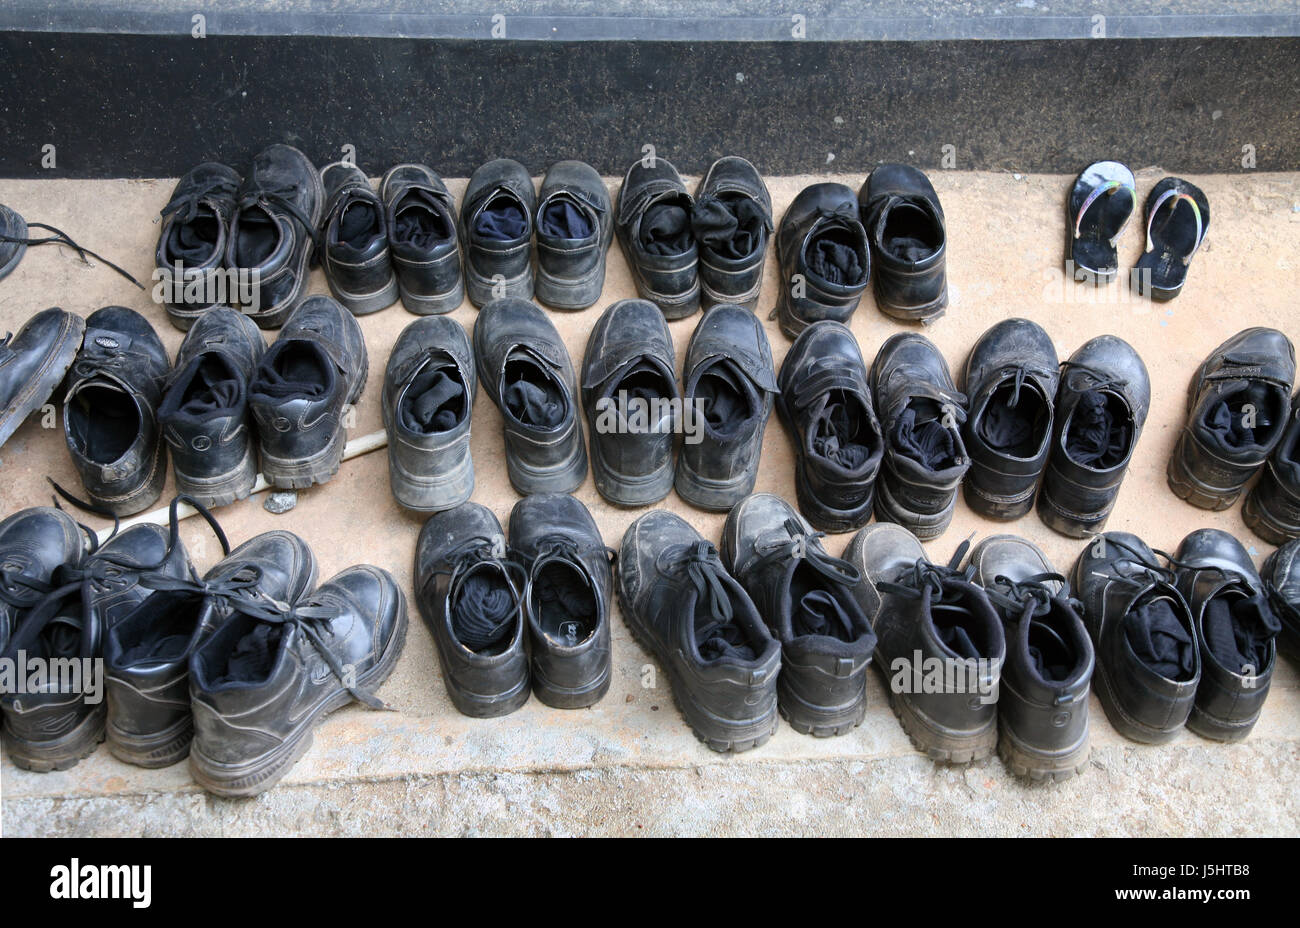 Jetblack basané noir poussières de noir de boue chaussures sandales sandales à bride cheville Banque D'Images